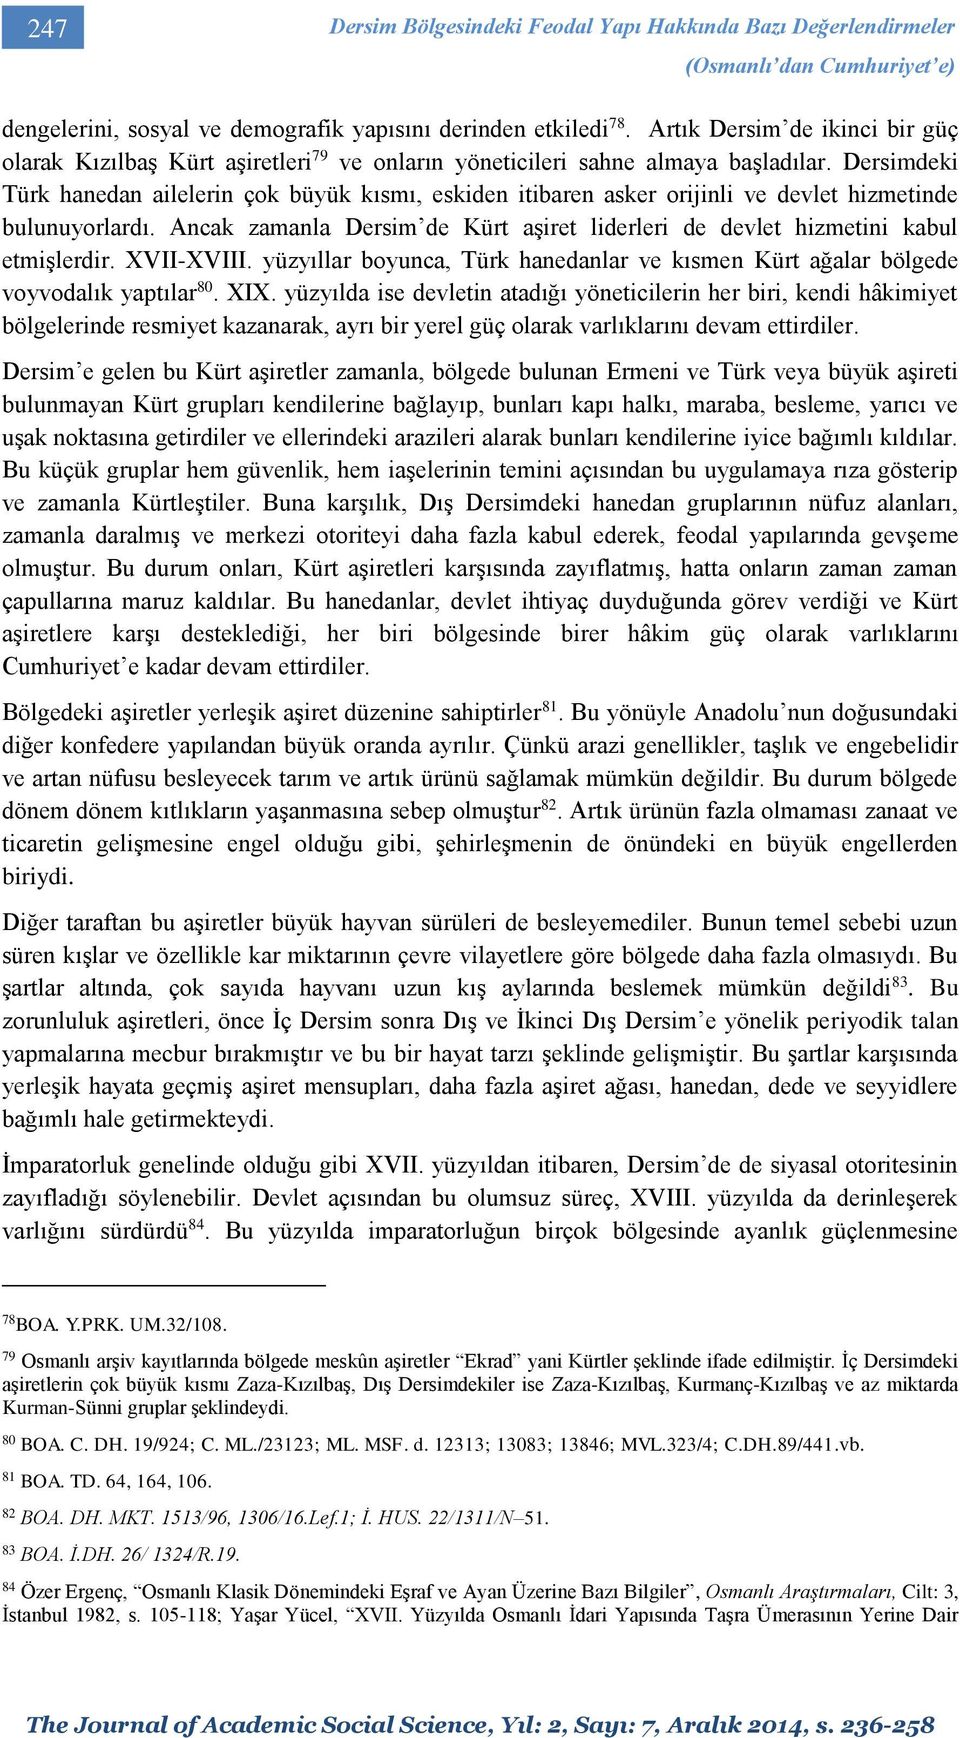 Dersimdeki Türk hanedan ailelerin çok büyük kısmı, eskiden itibaren asker orijinli ve devlet hizmetinde bulunuyorlardı.